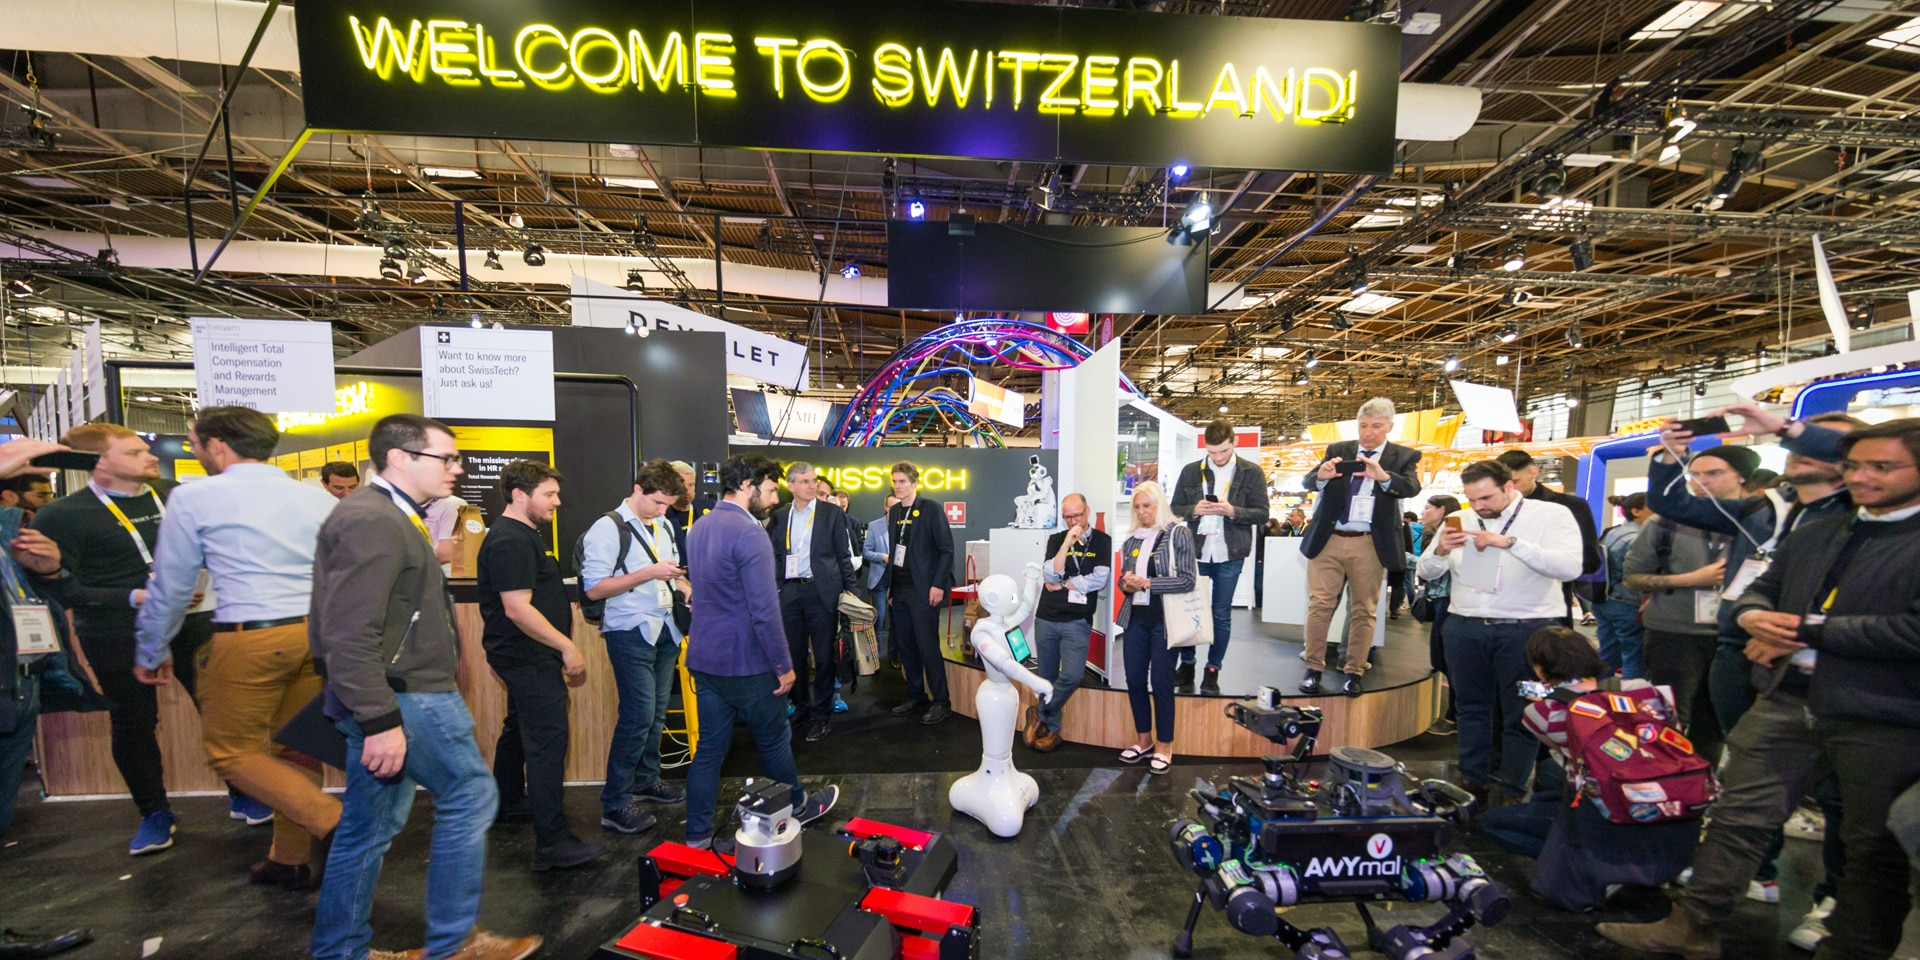 In un padiglione espositivo alcune persone guardano droni, robot e tecnologie innovative. In alto un cartello con la scritta «Welcome to Switzerland».